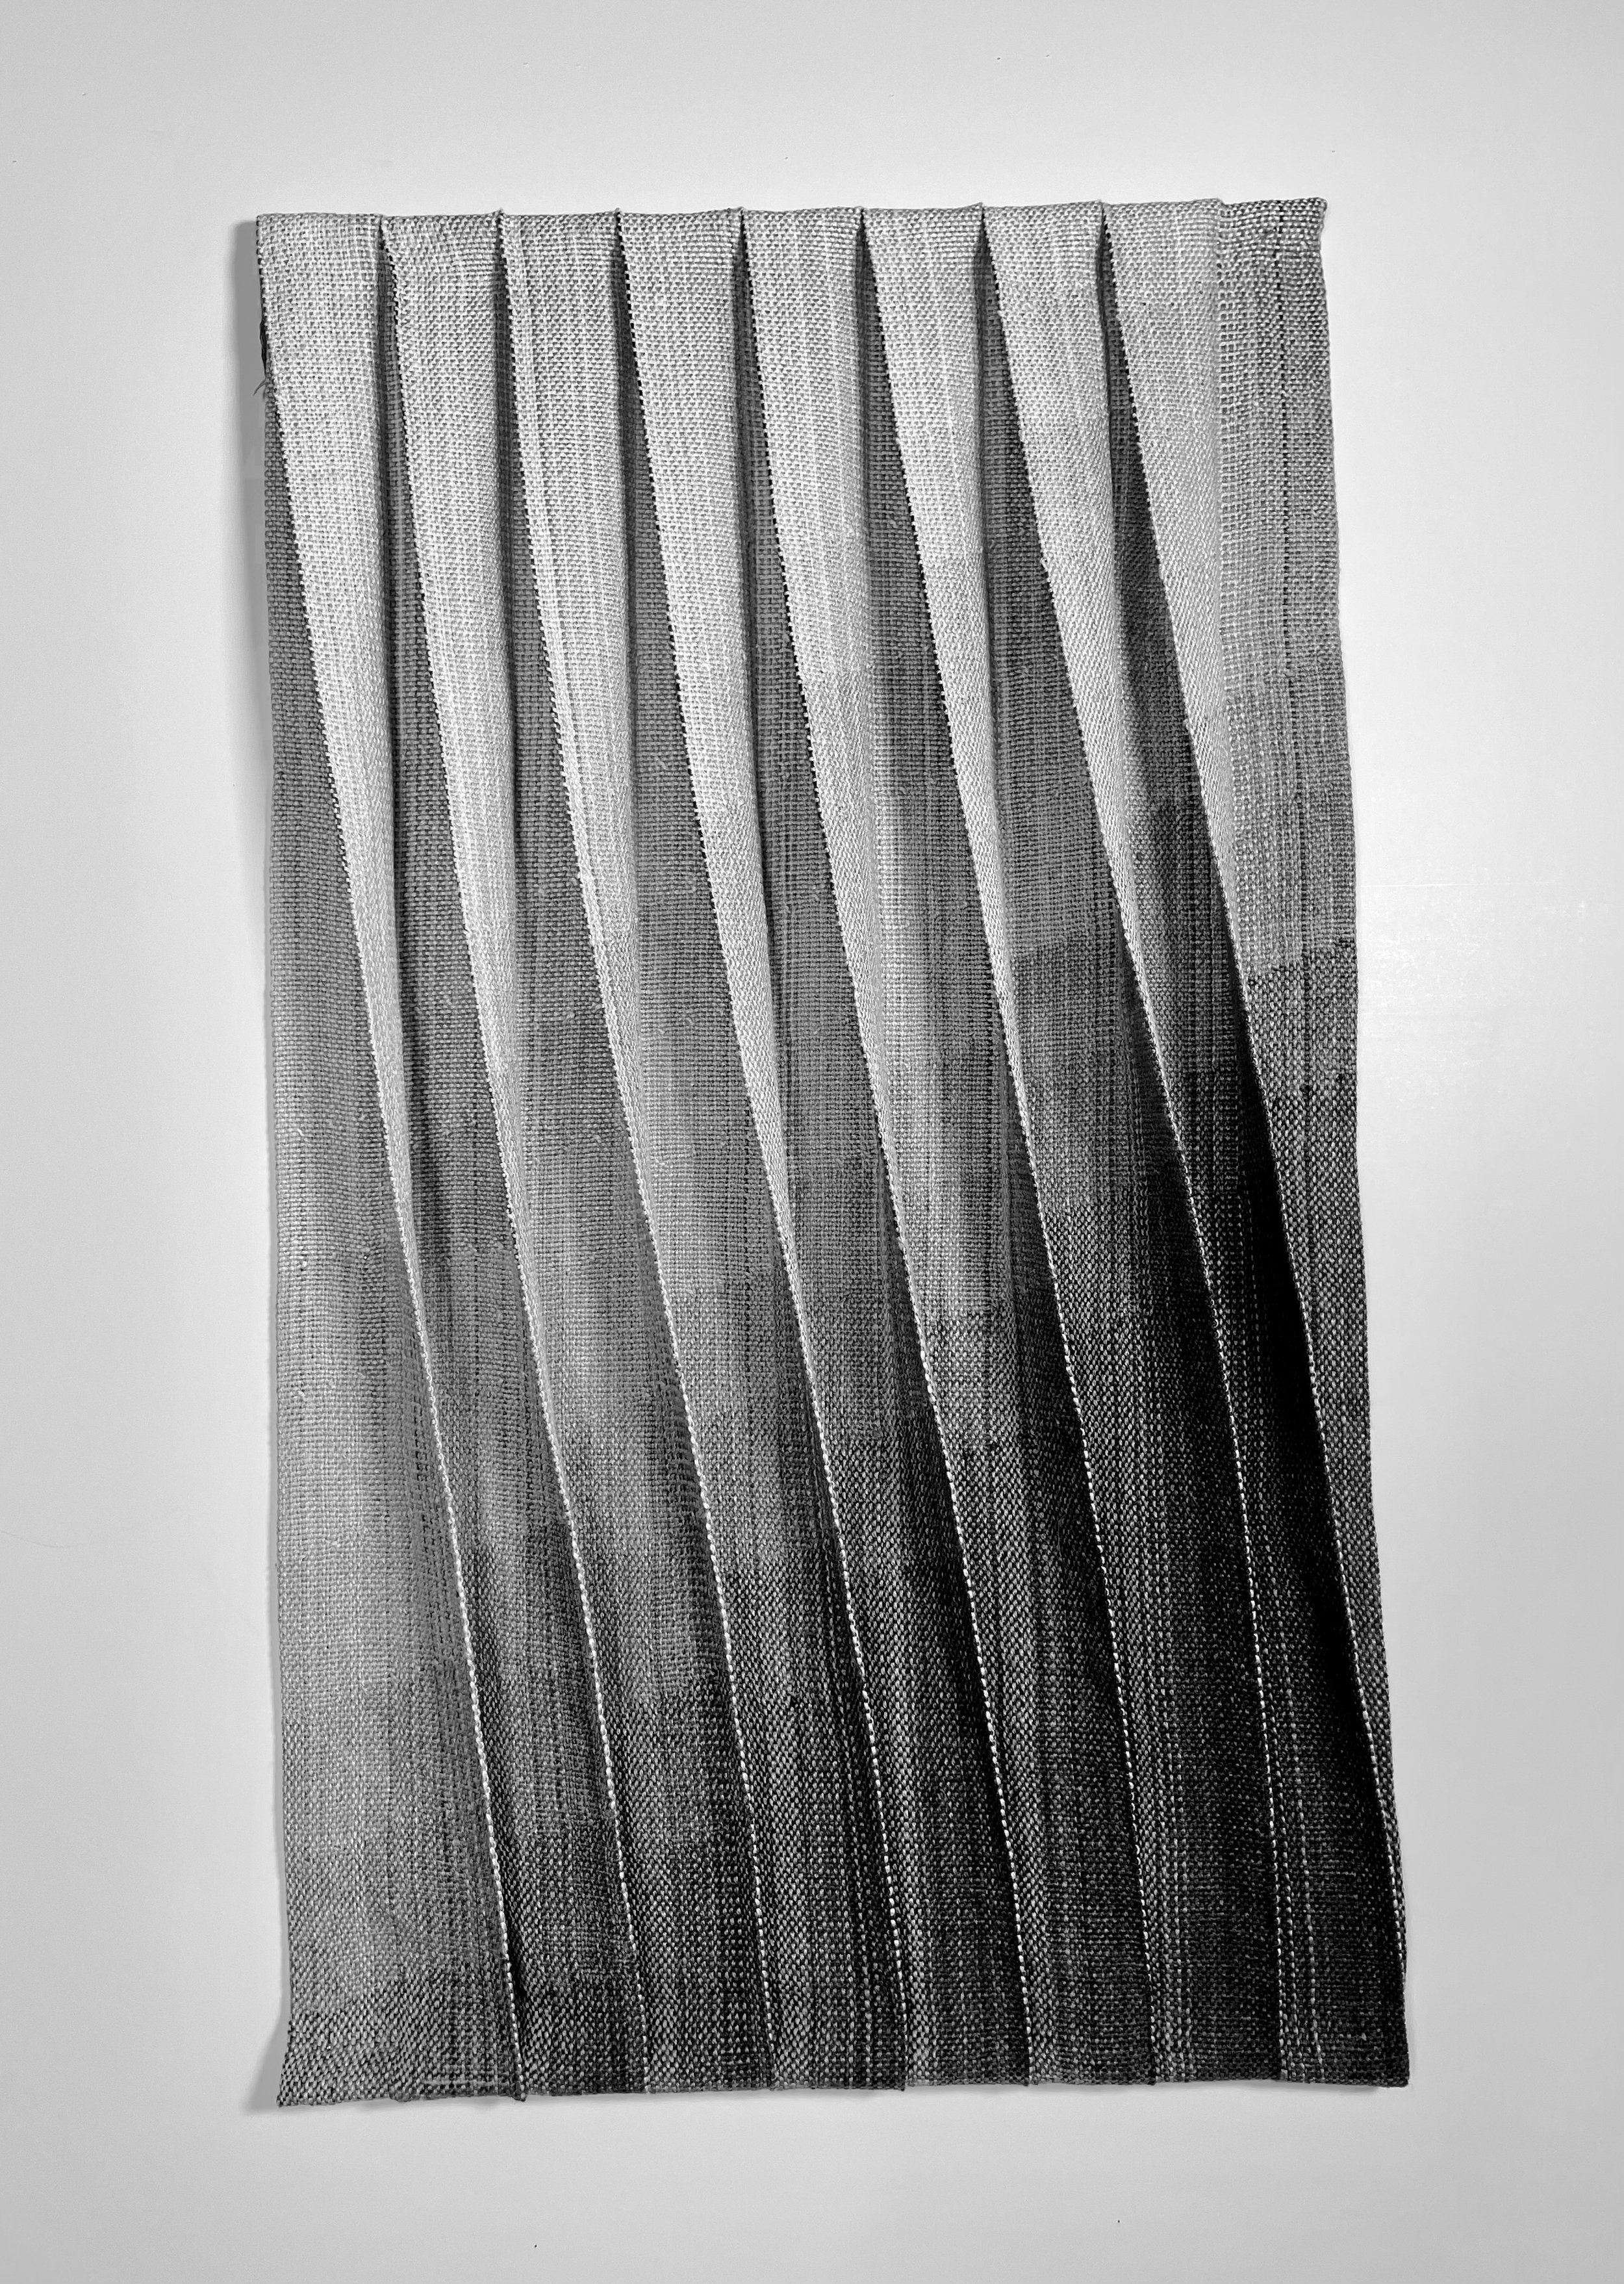    Folds #5     Linen    16.5 x 28.5  